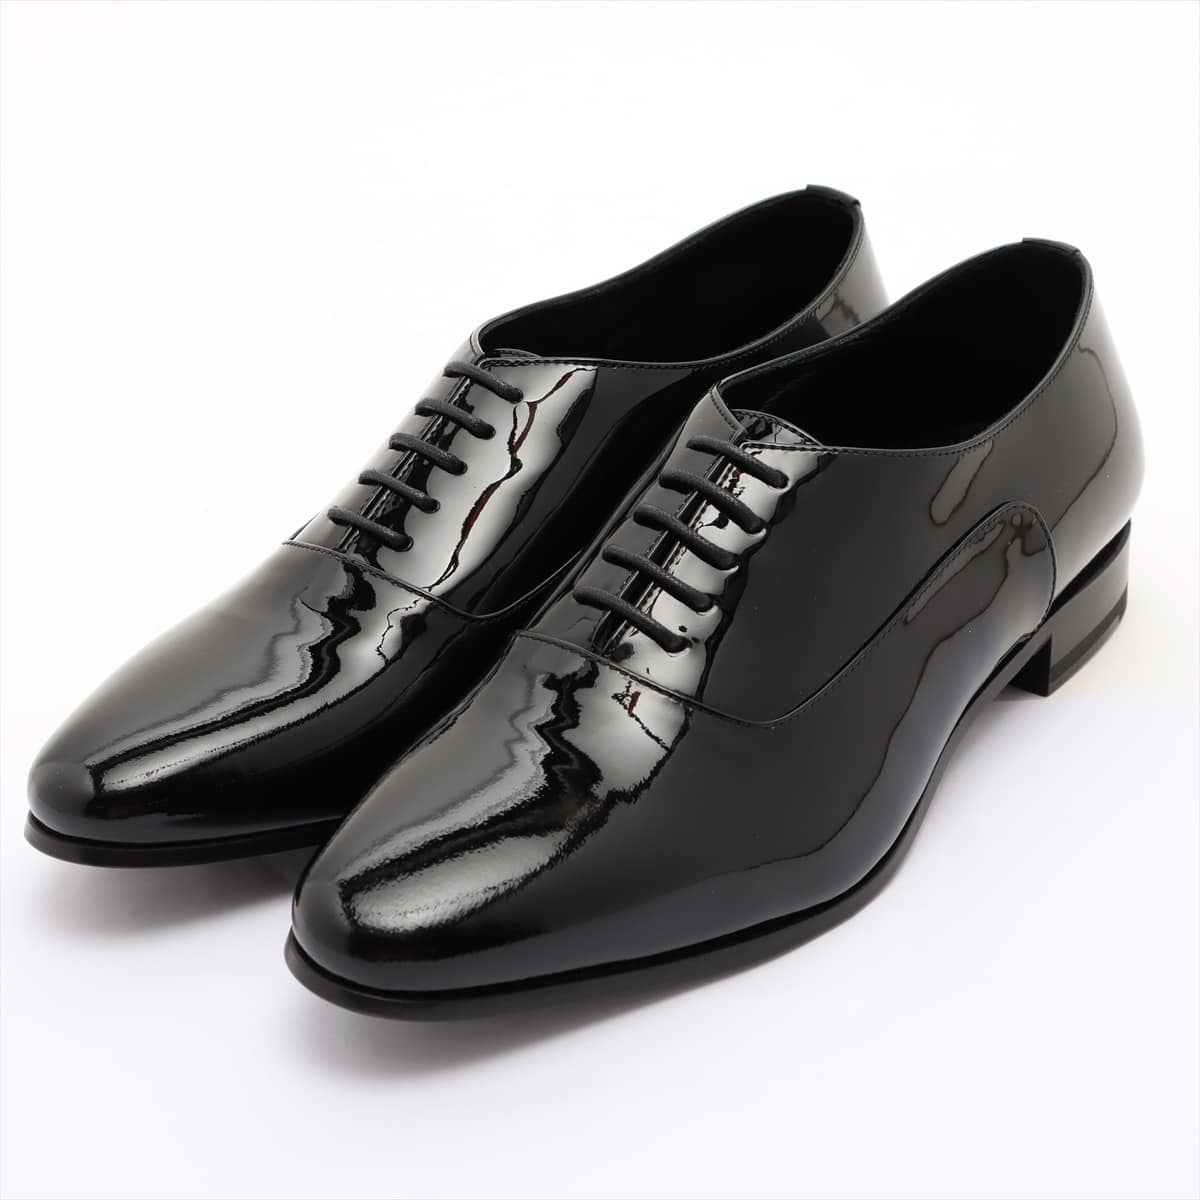 Saint Laurent Paris Patent leather Dress shoes 36.5 Ladies' Black